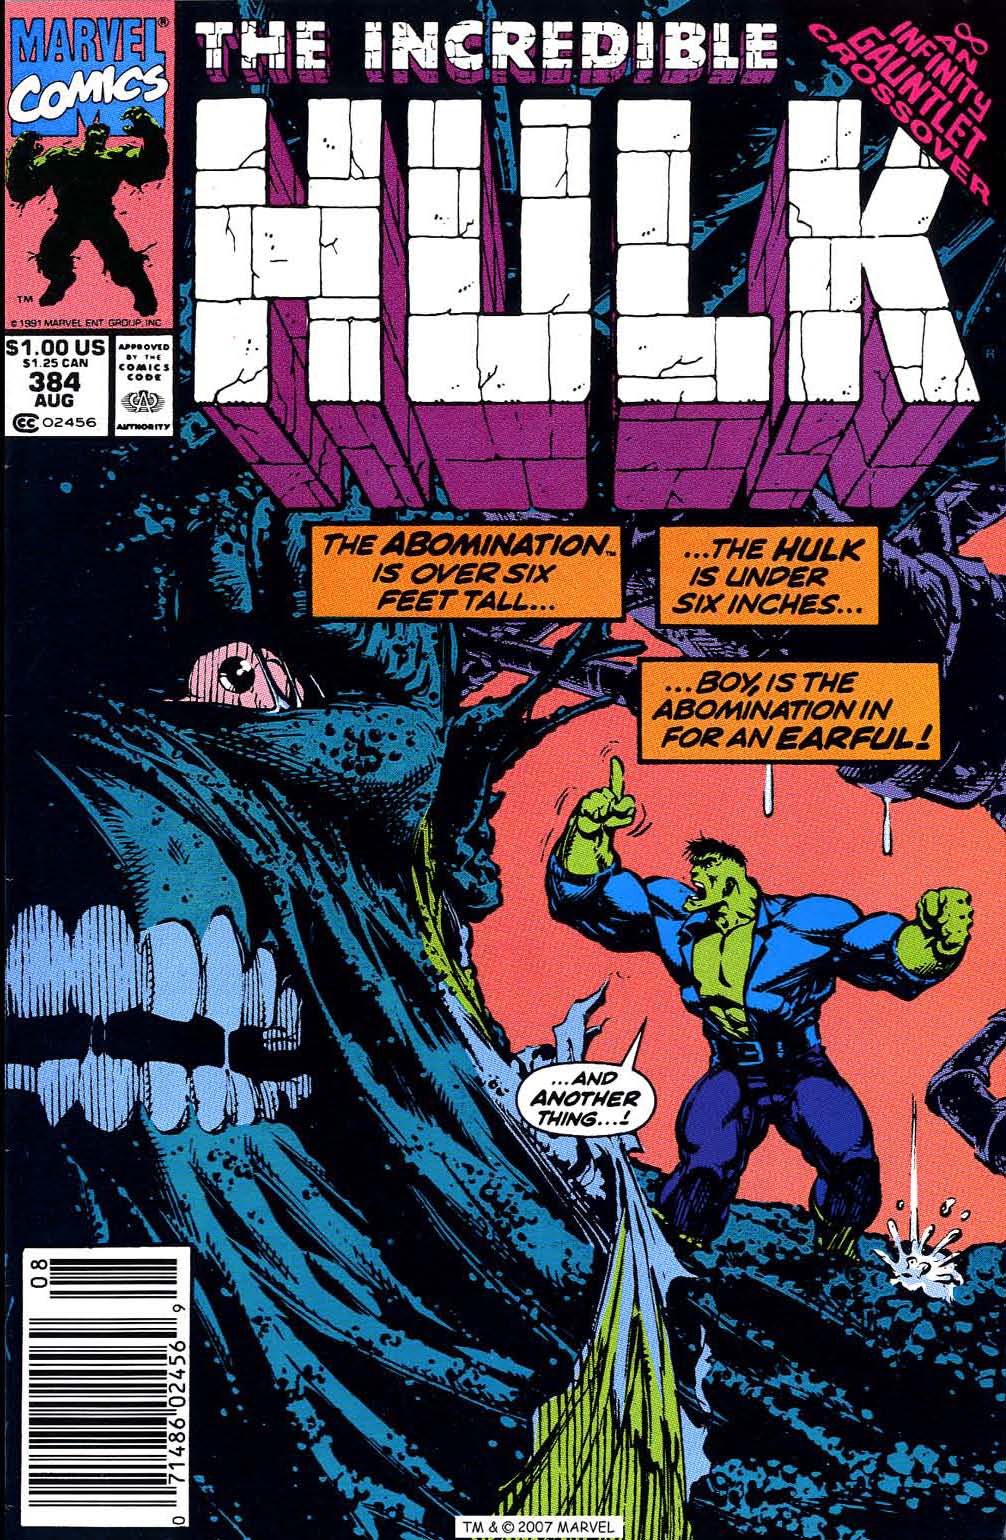 The Incredible Hulk Vol. 1 #384